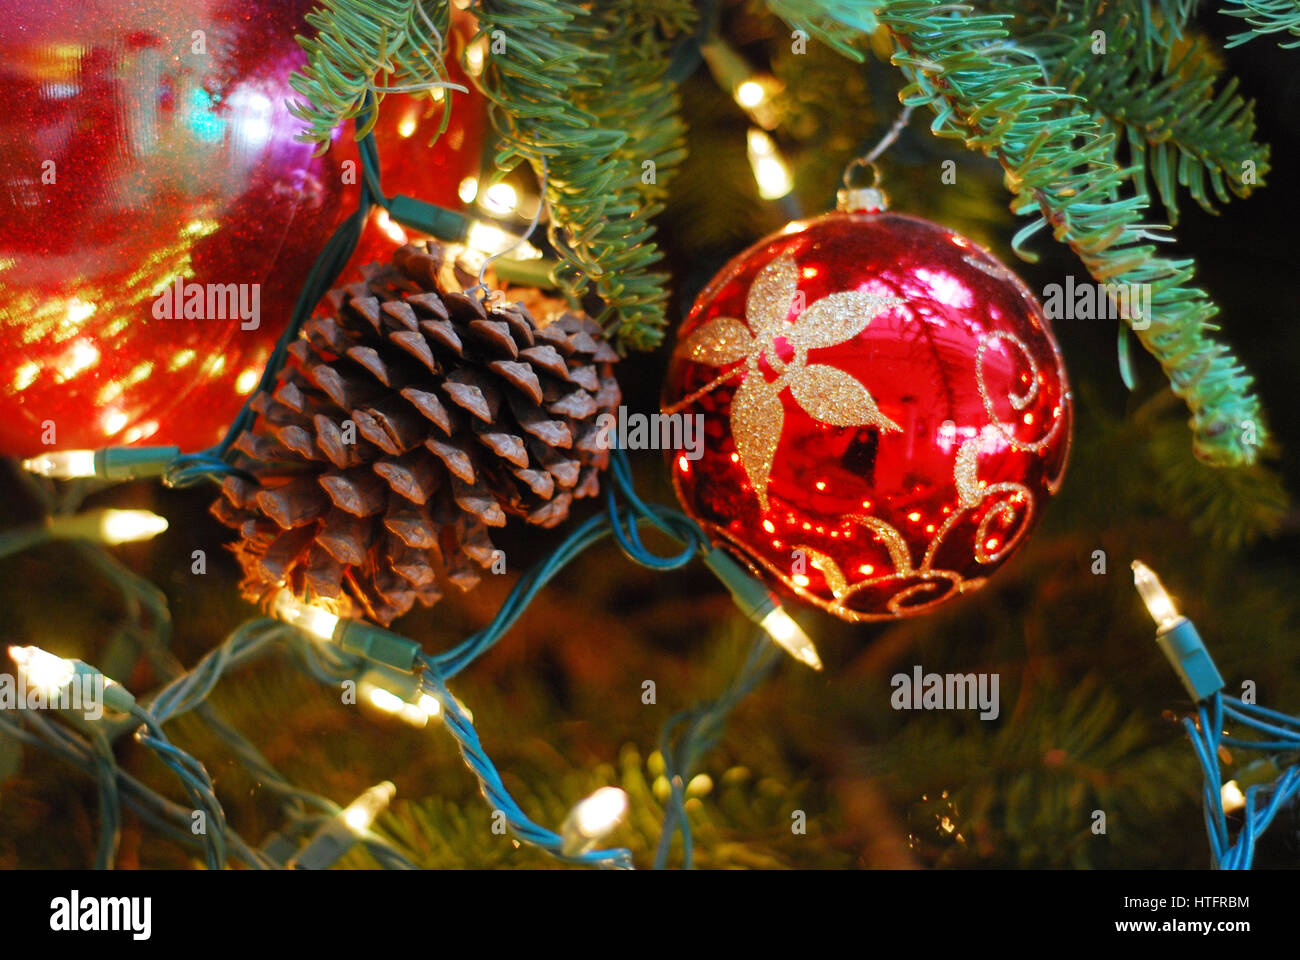 Real Christmas Tree Stock Photos & Real Christmas Tree Stock Images - Alamy